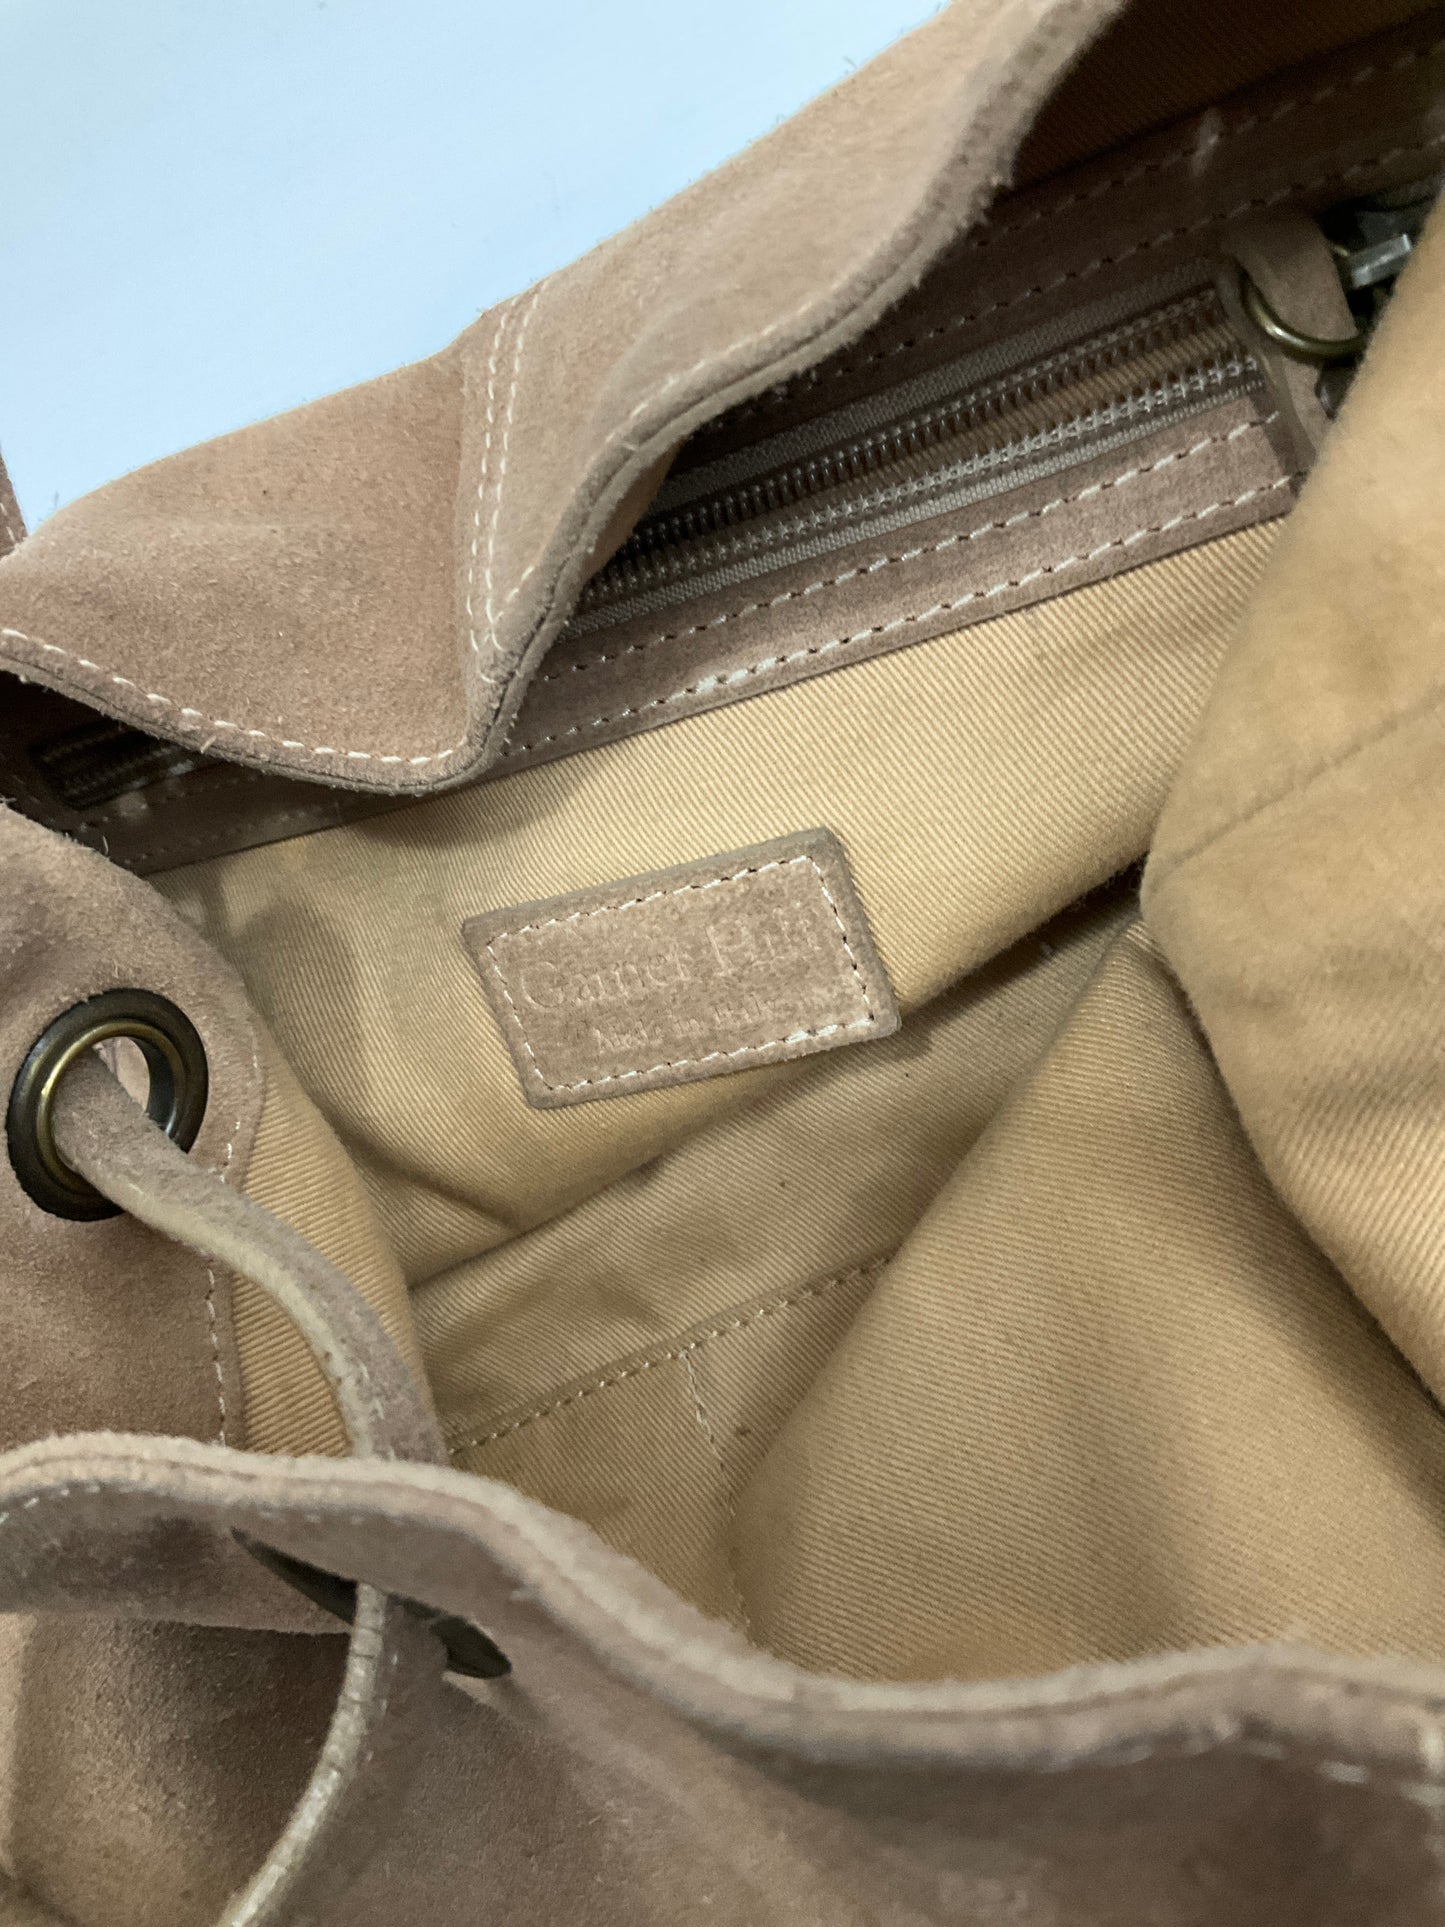 Handbag Leather By Garnet Hill  Size: Medium